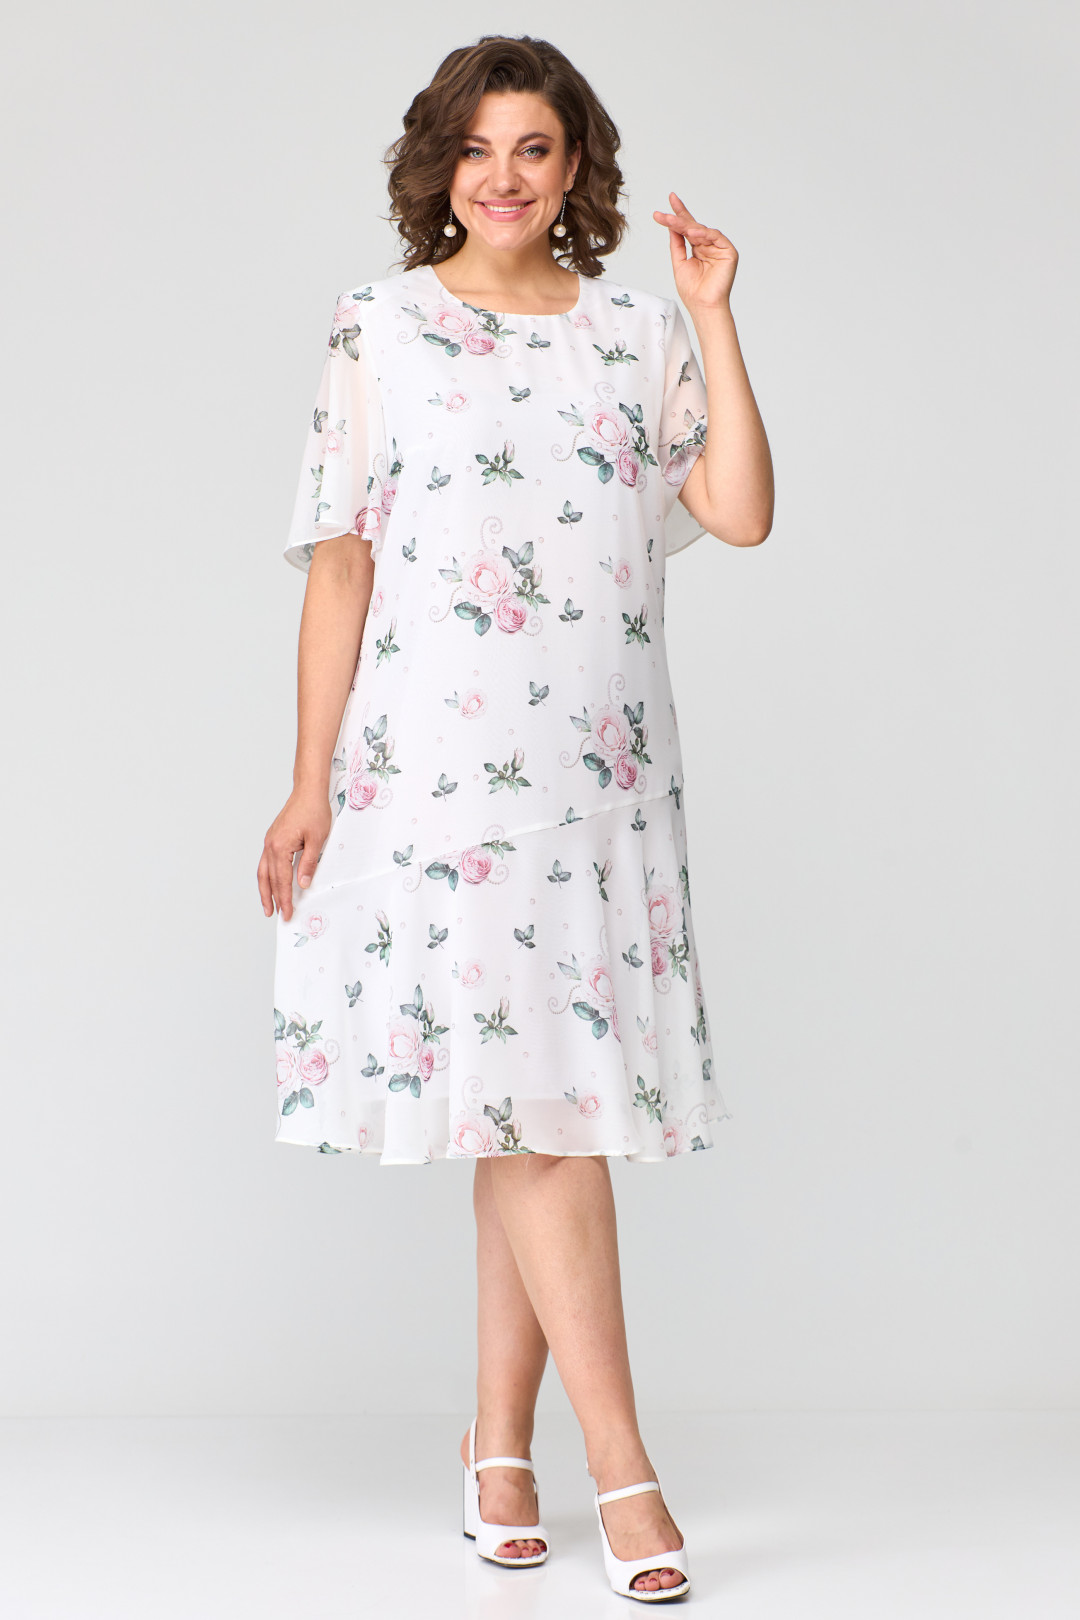 Платье Элль-стиль 2219/1 принт цветы на белом фоне